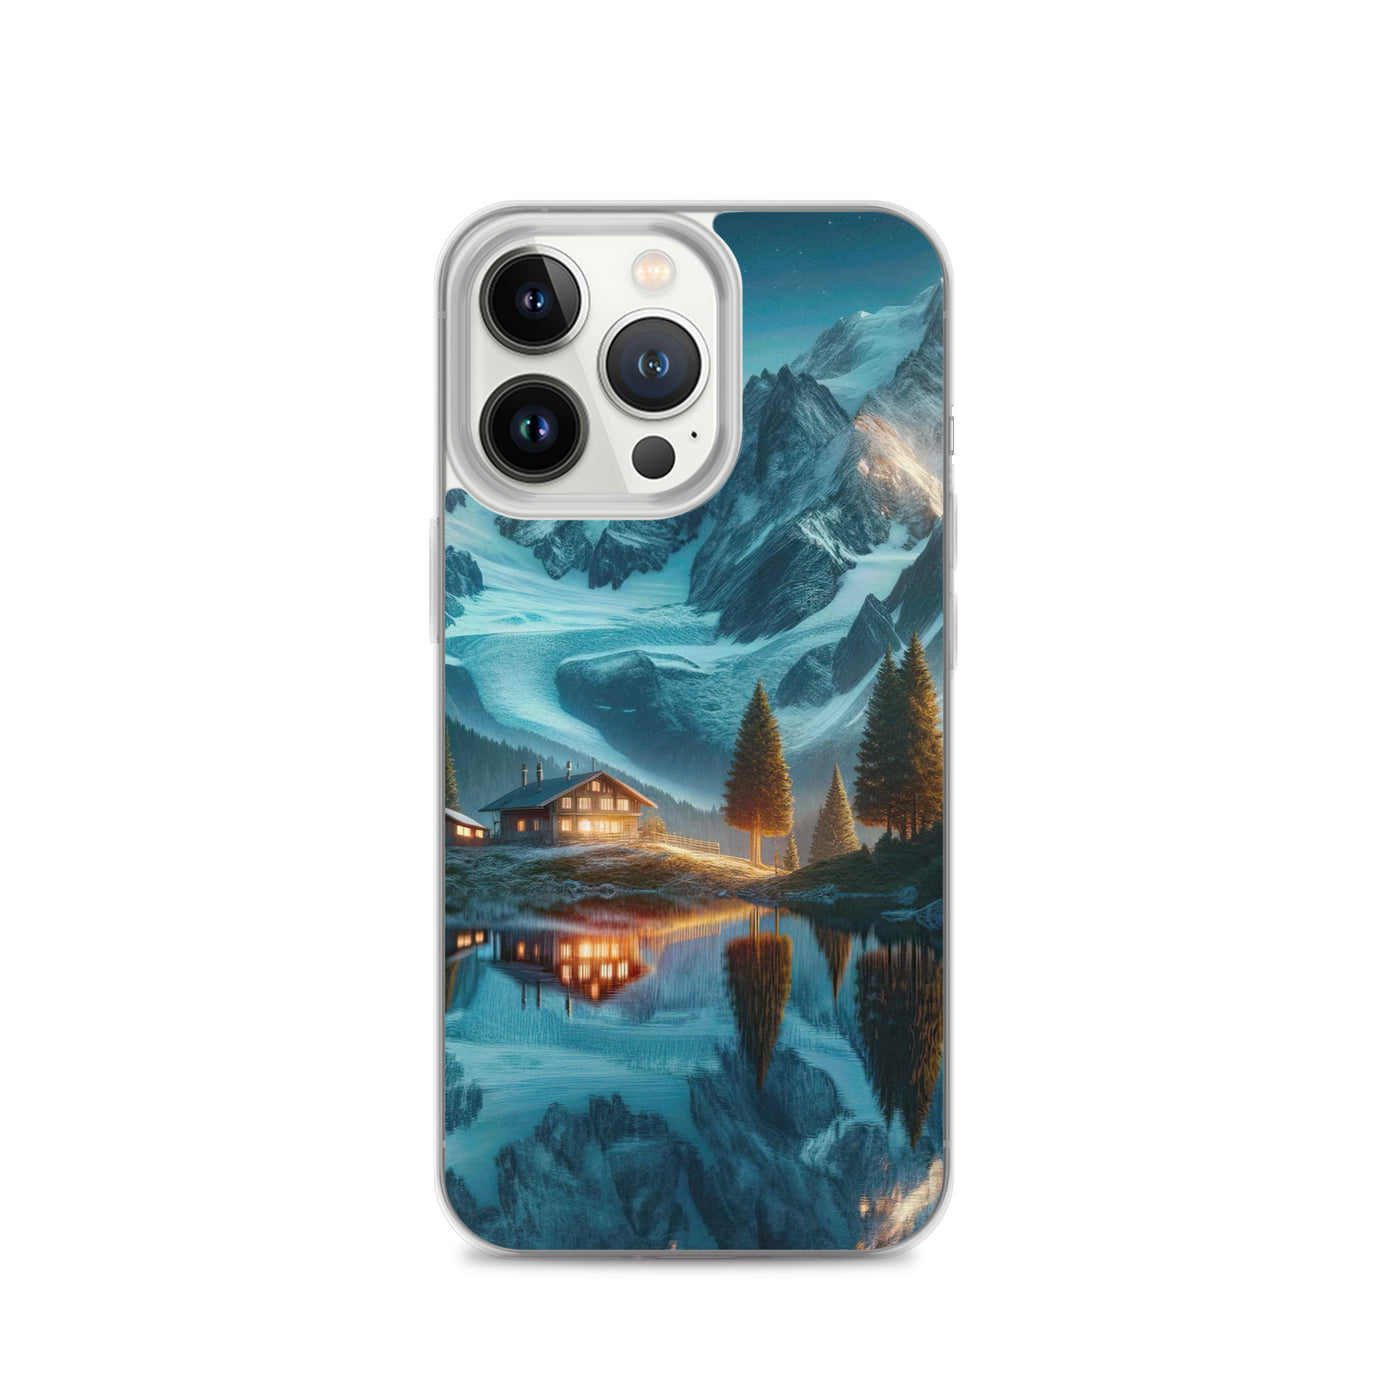 Stille Alpenmajestätik: Digitale Kunst mit Schnee und Bergsee-Spiegelung - iPhone Schutzhülle (durchsichtig) berge xxx yyy zzz iPhone 13 Pro